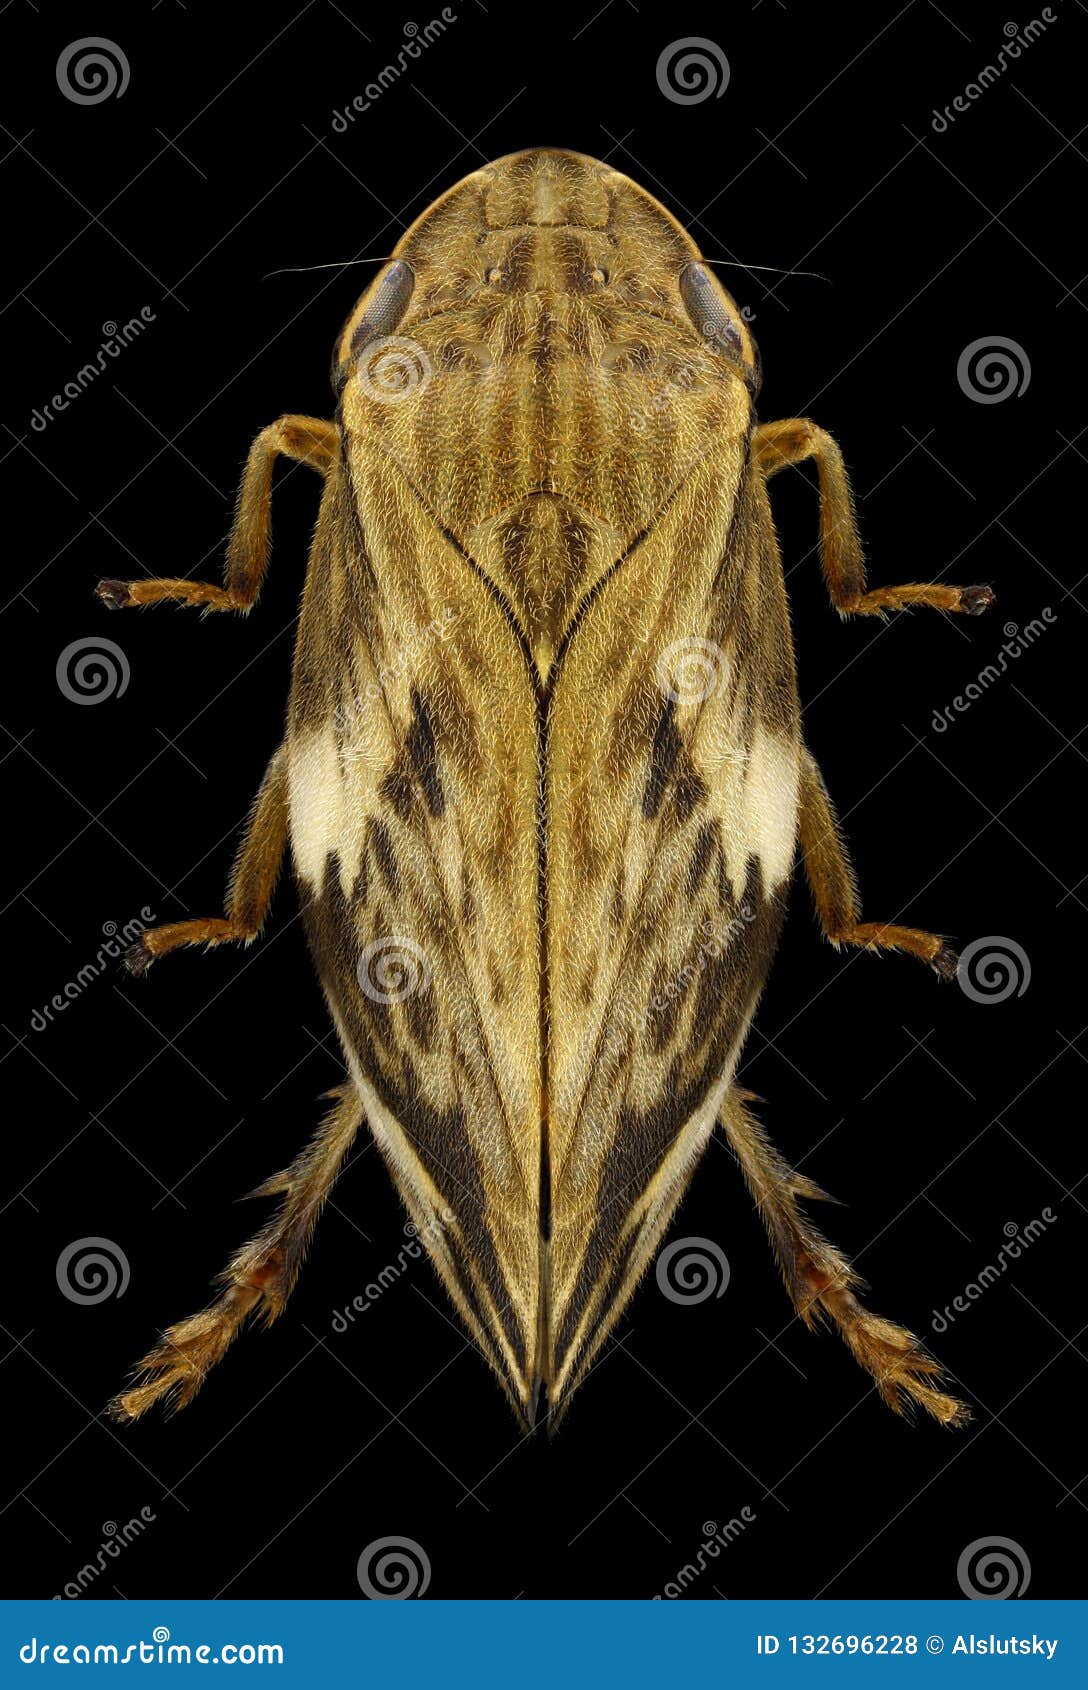 cicada clovia conifera